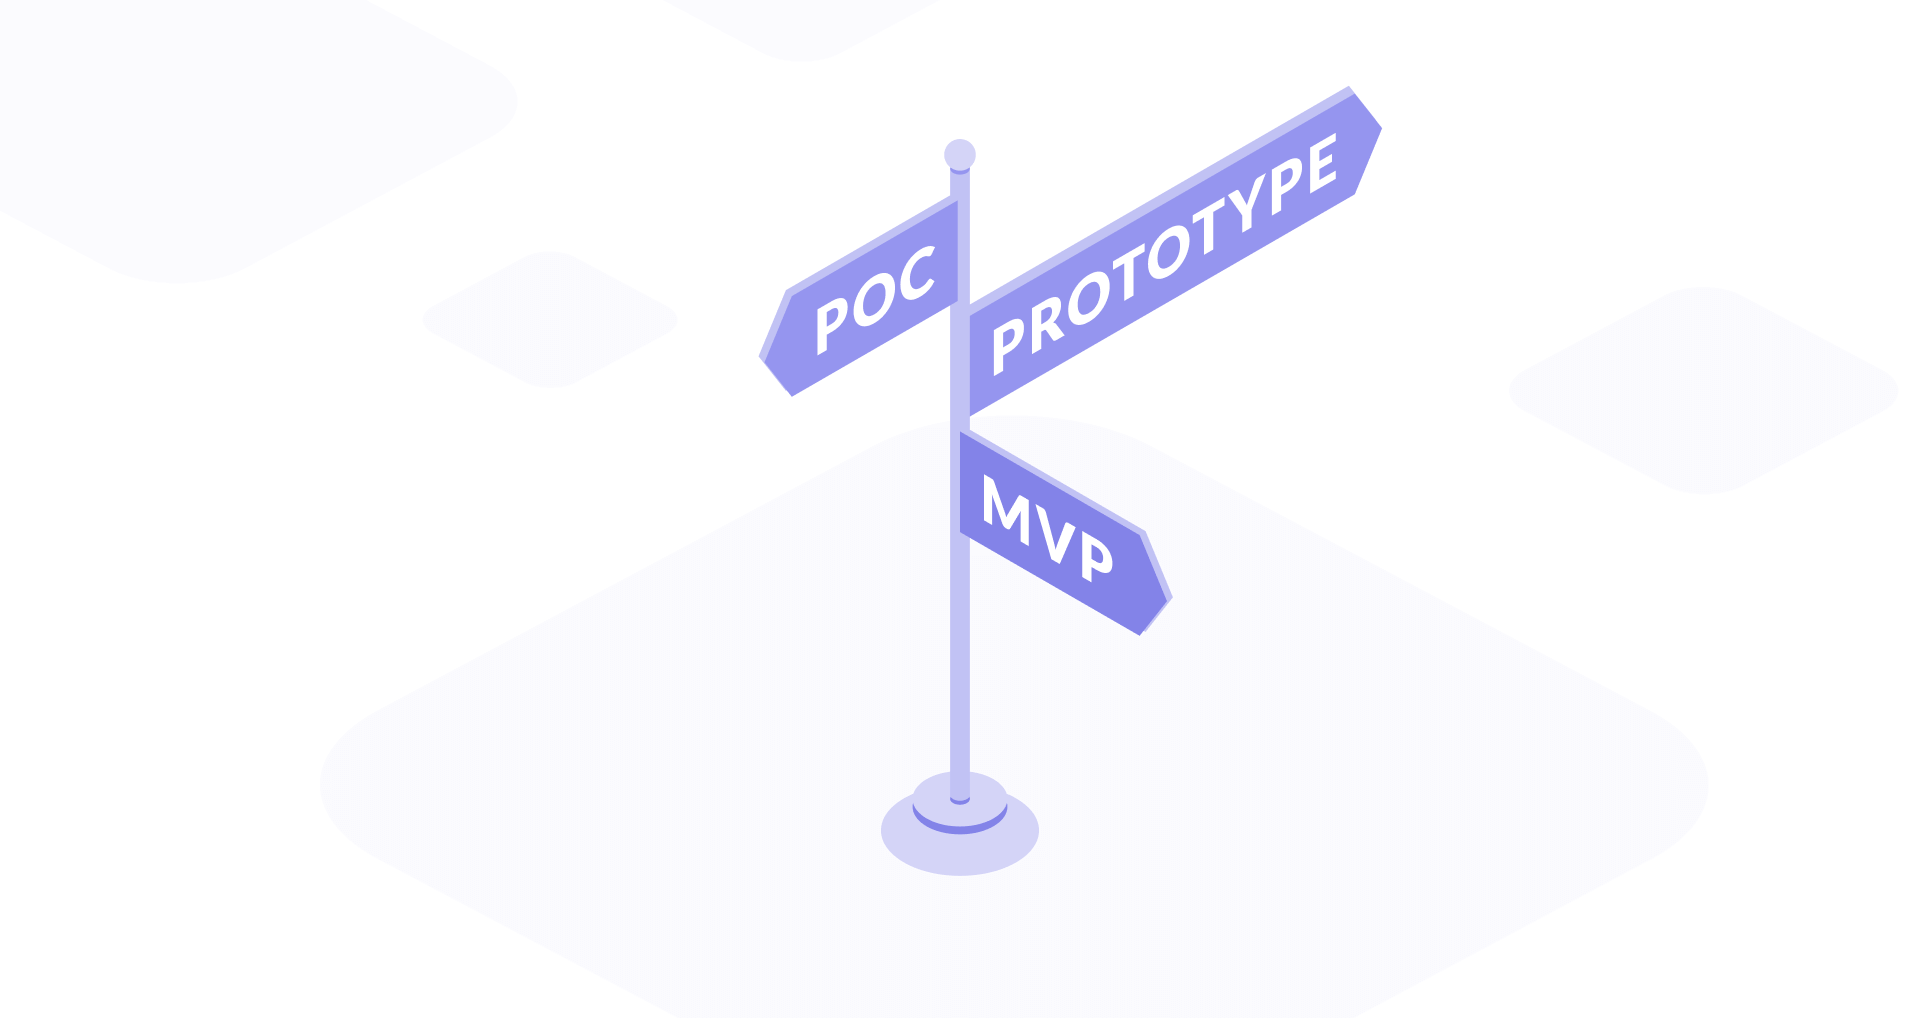 MVP vs PoC vs Prototyping